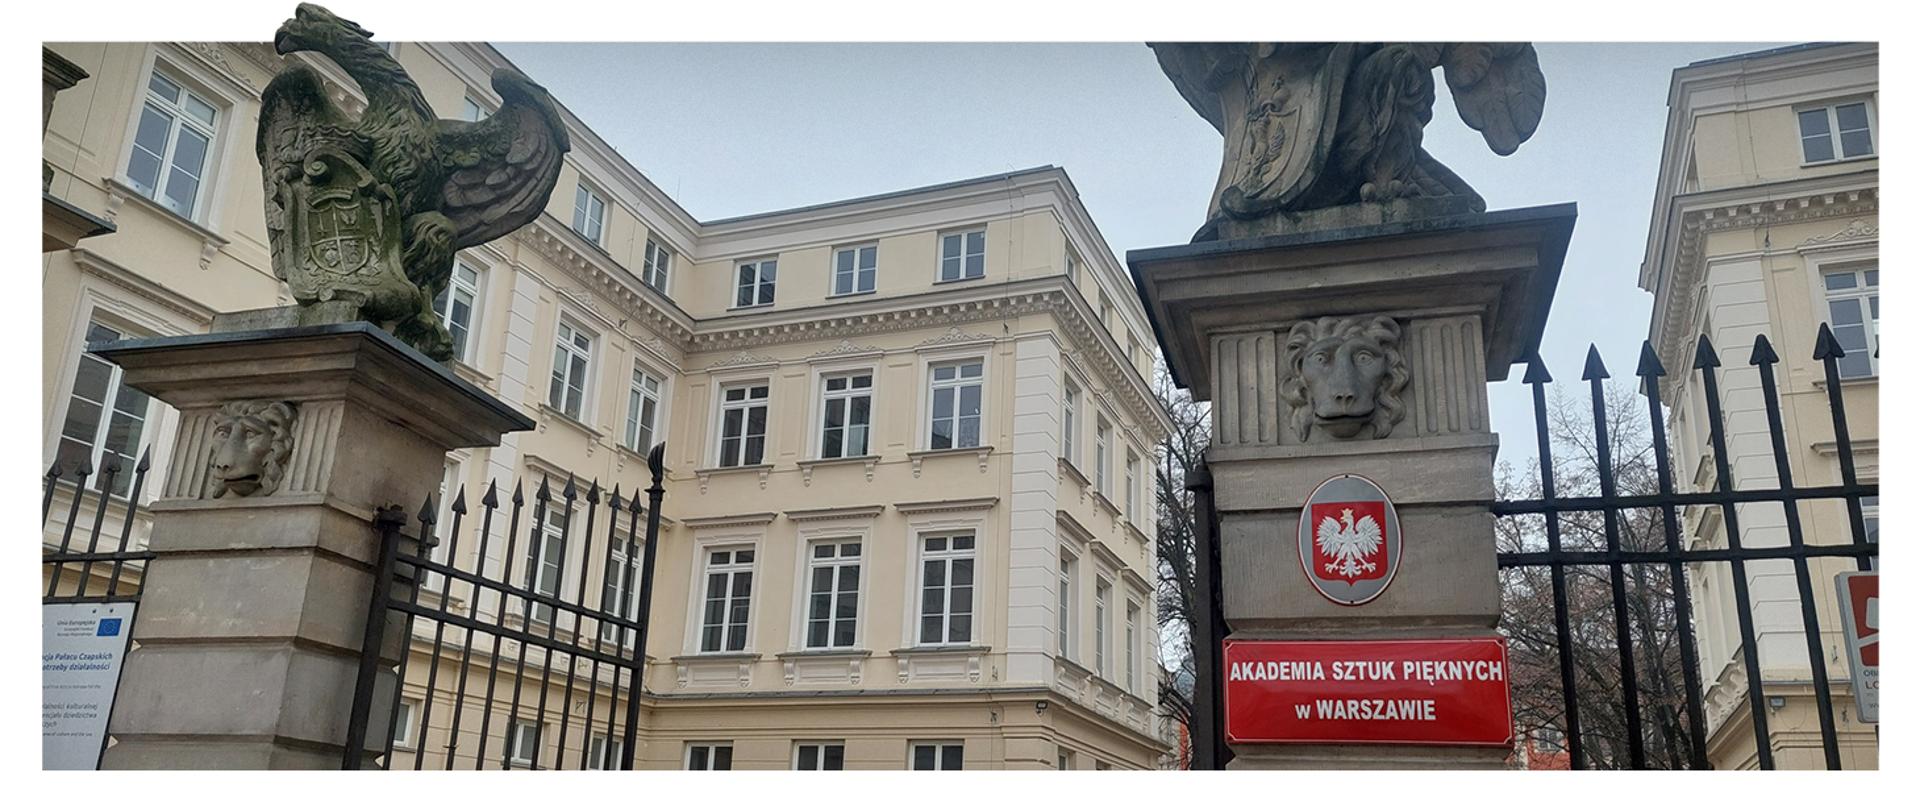 brama ASP w Warszawie z budynkiem w tle